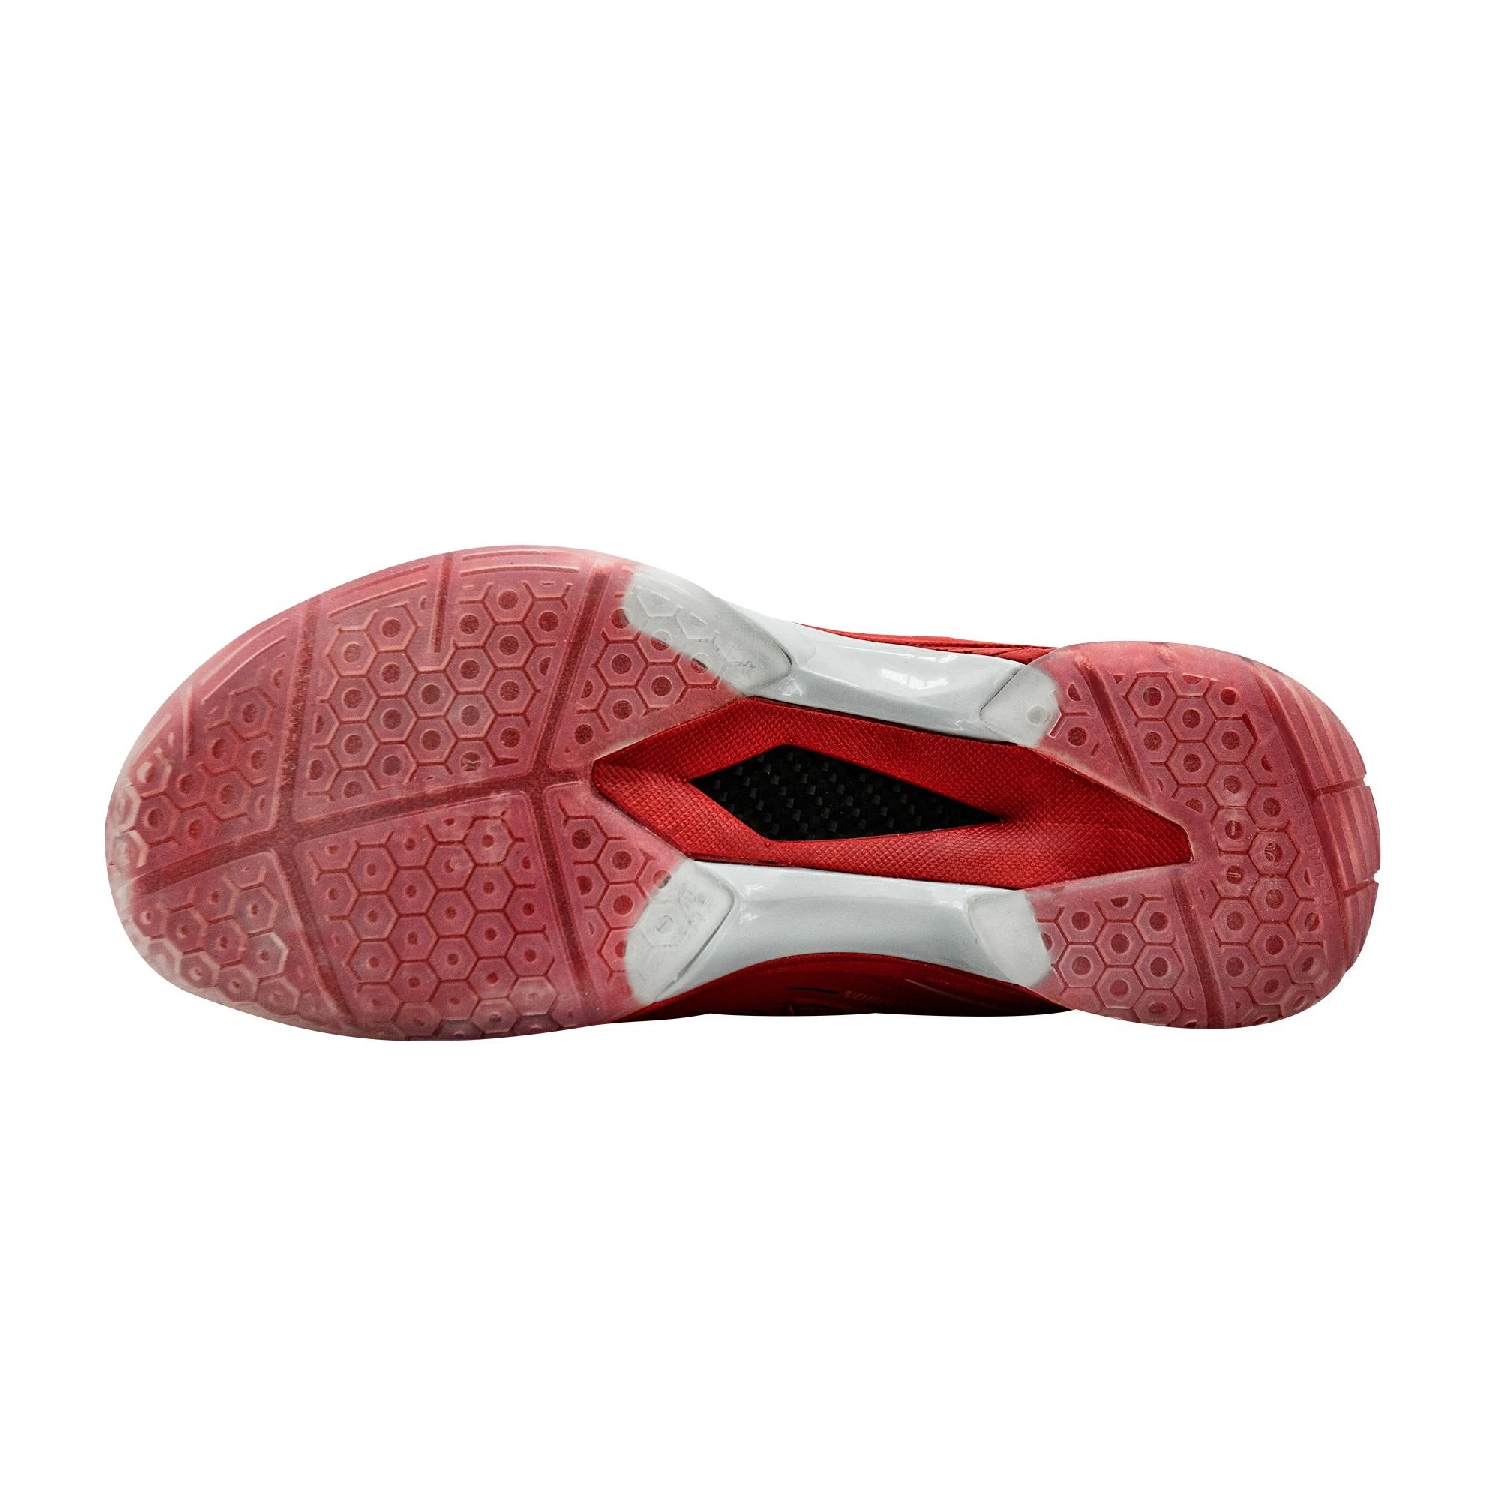 Giày cầu lông Yonex chính hãng - Hydro Force 2 Đỏ